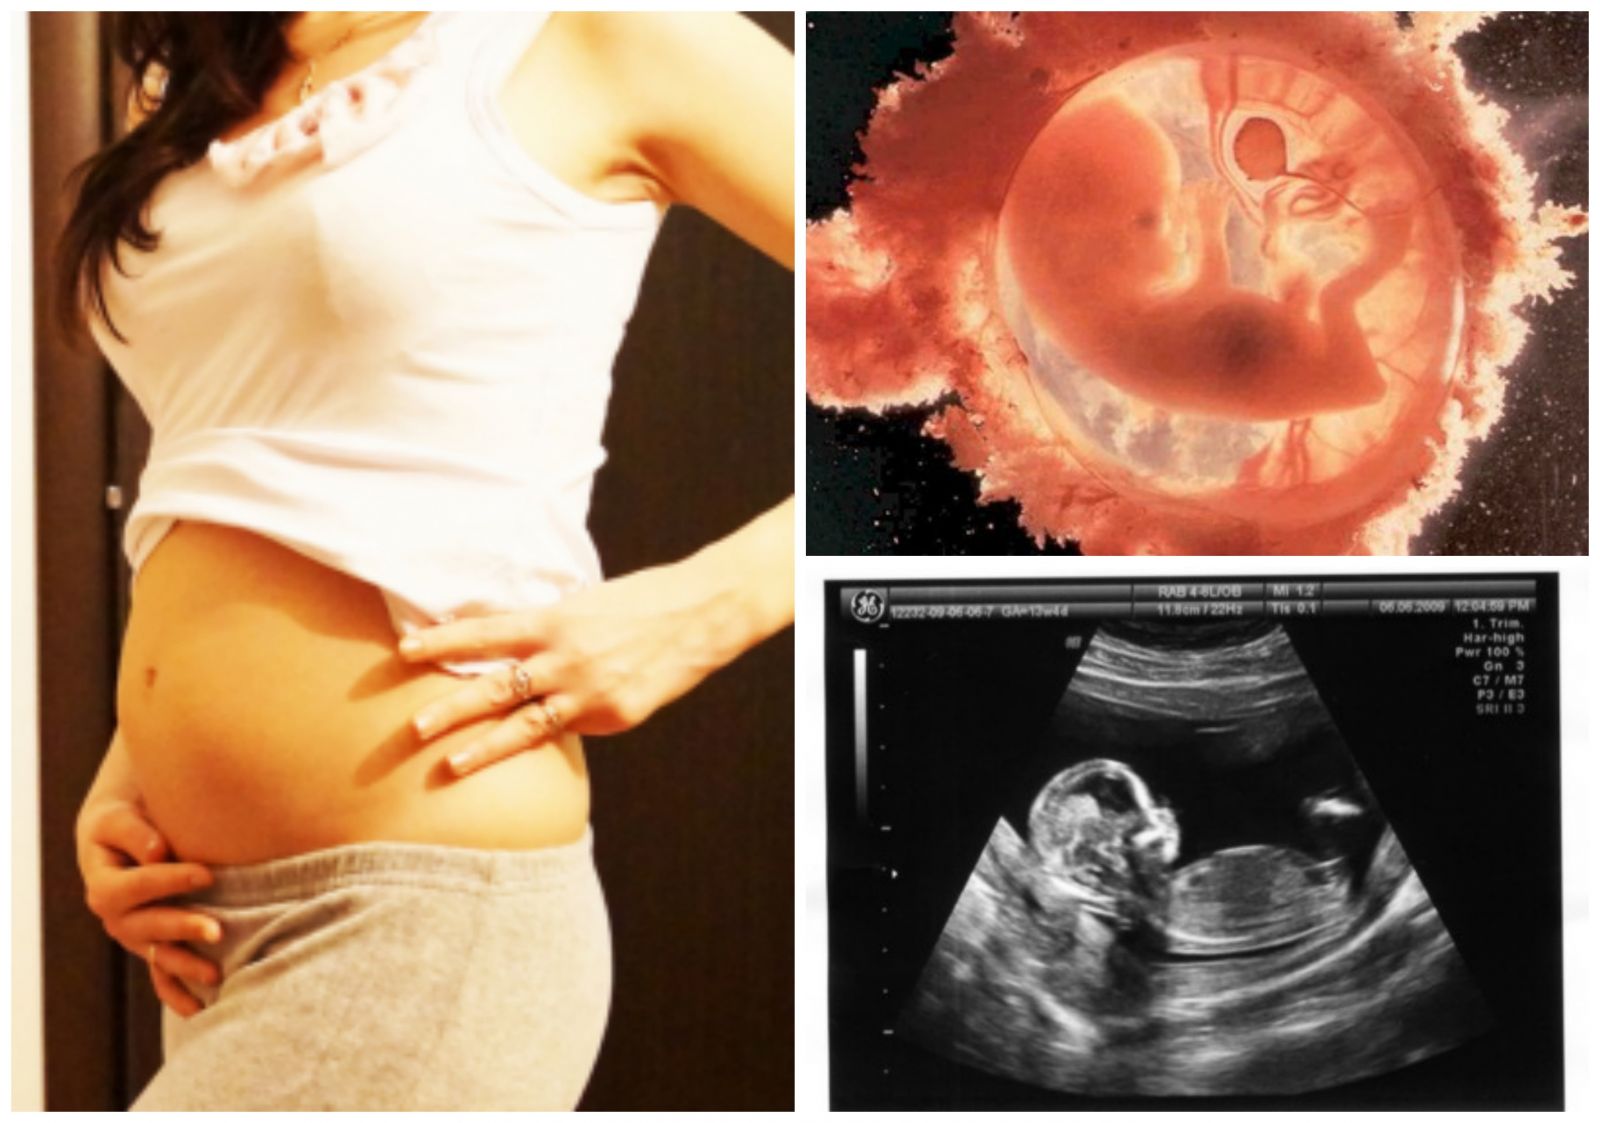 13 акушерская неделя. Ребенок на 13 неделе беременности УЗИ. Размер эмбриона в 13 недель беременности. 13 Недель беременности фото плода на УЗИ.